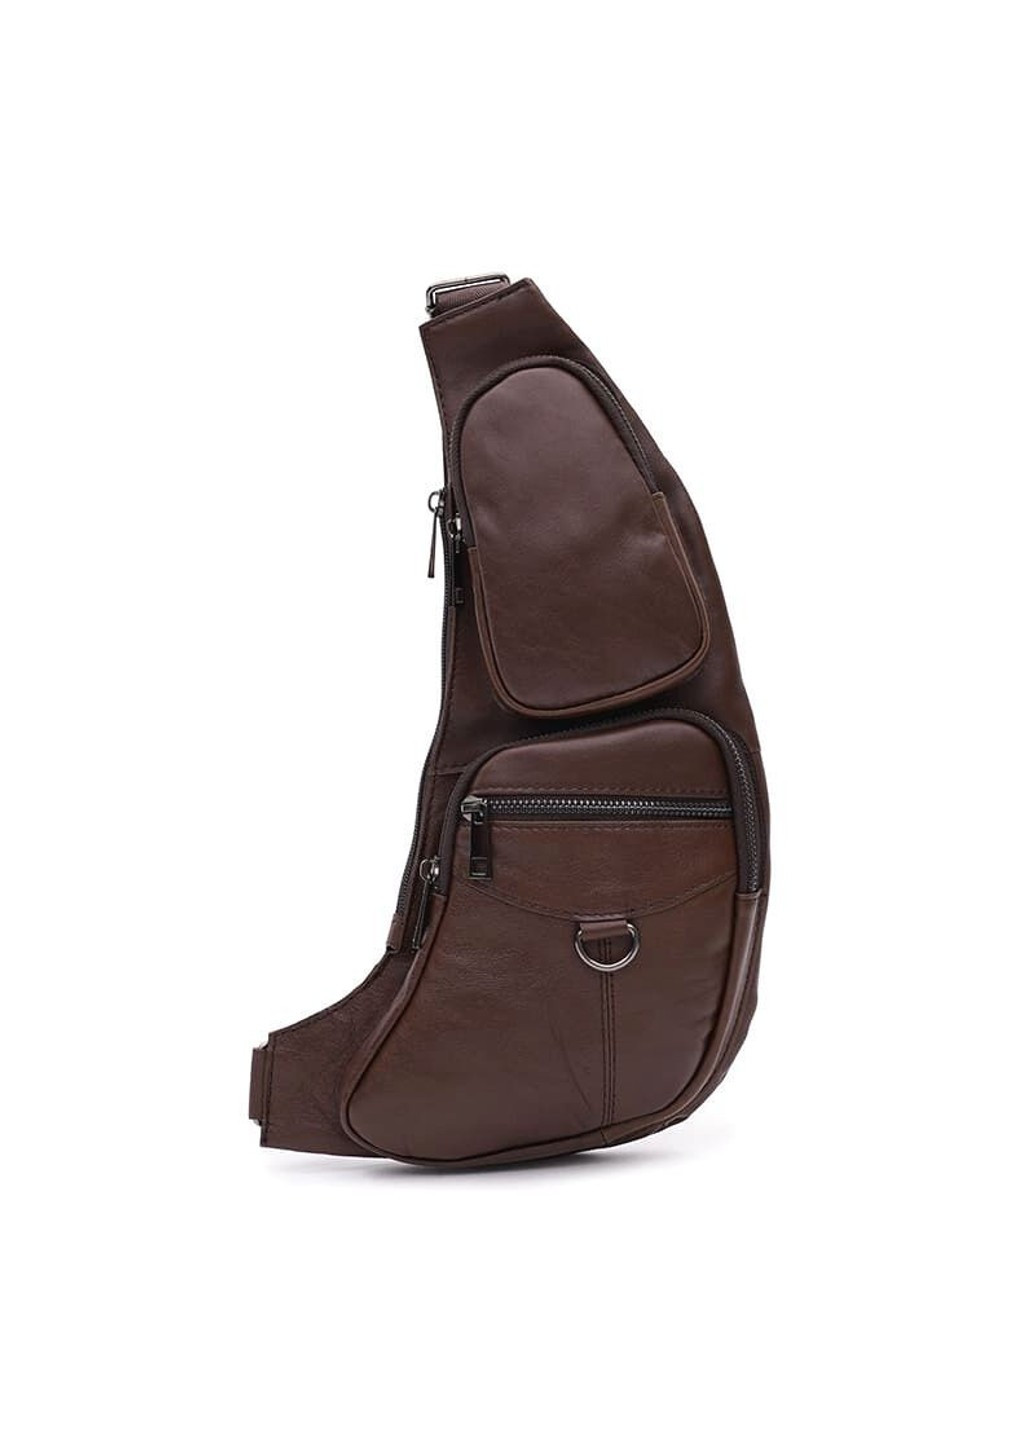 Мужской кожаный рюкзак через плечо K13761br-brown Keizer (266143488)